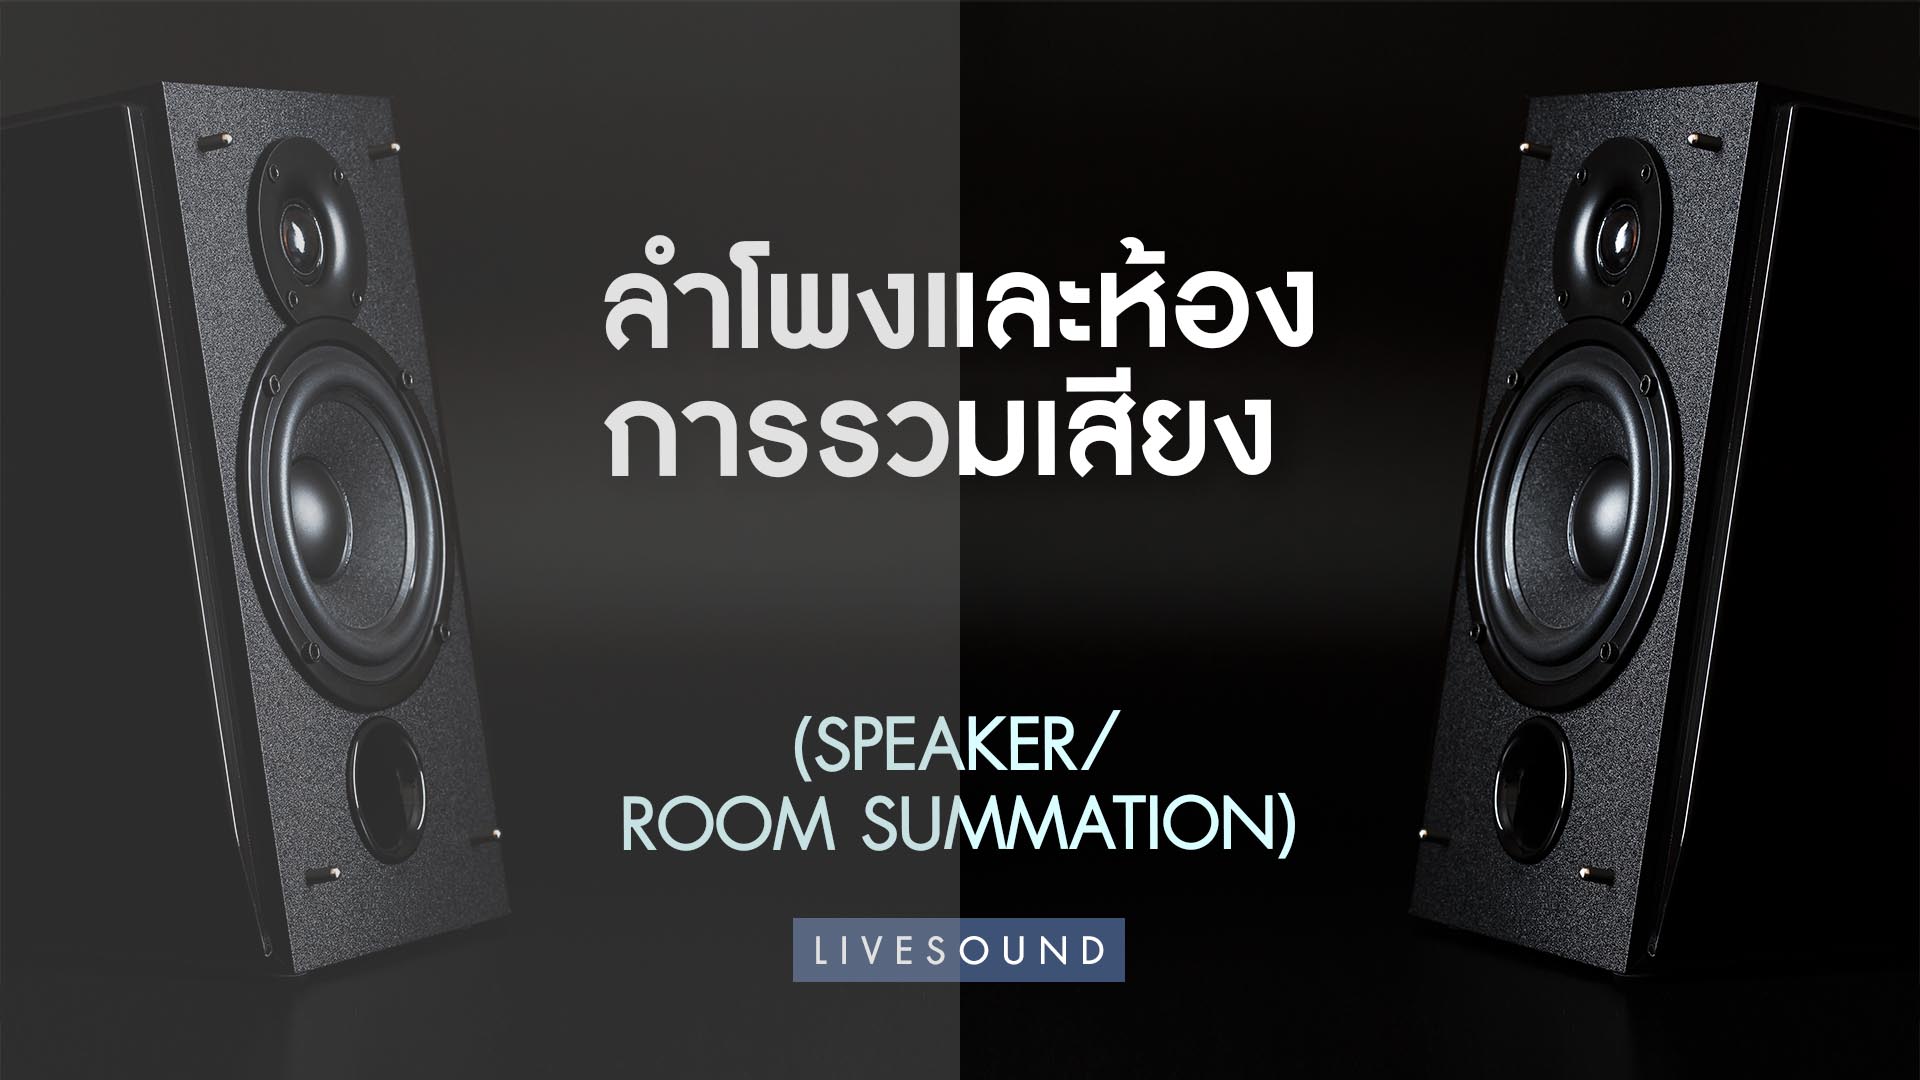 ลำโพงและห้อง การรวมเสียง (Speaker/Room Summation)